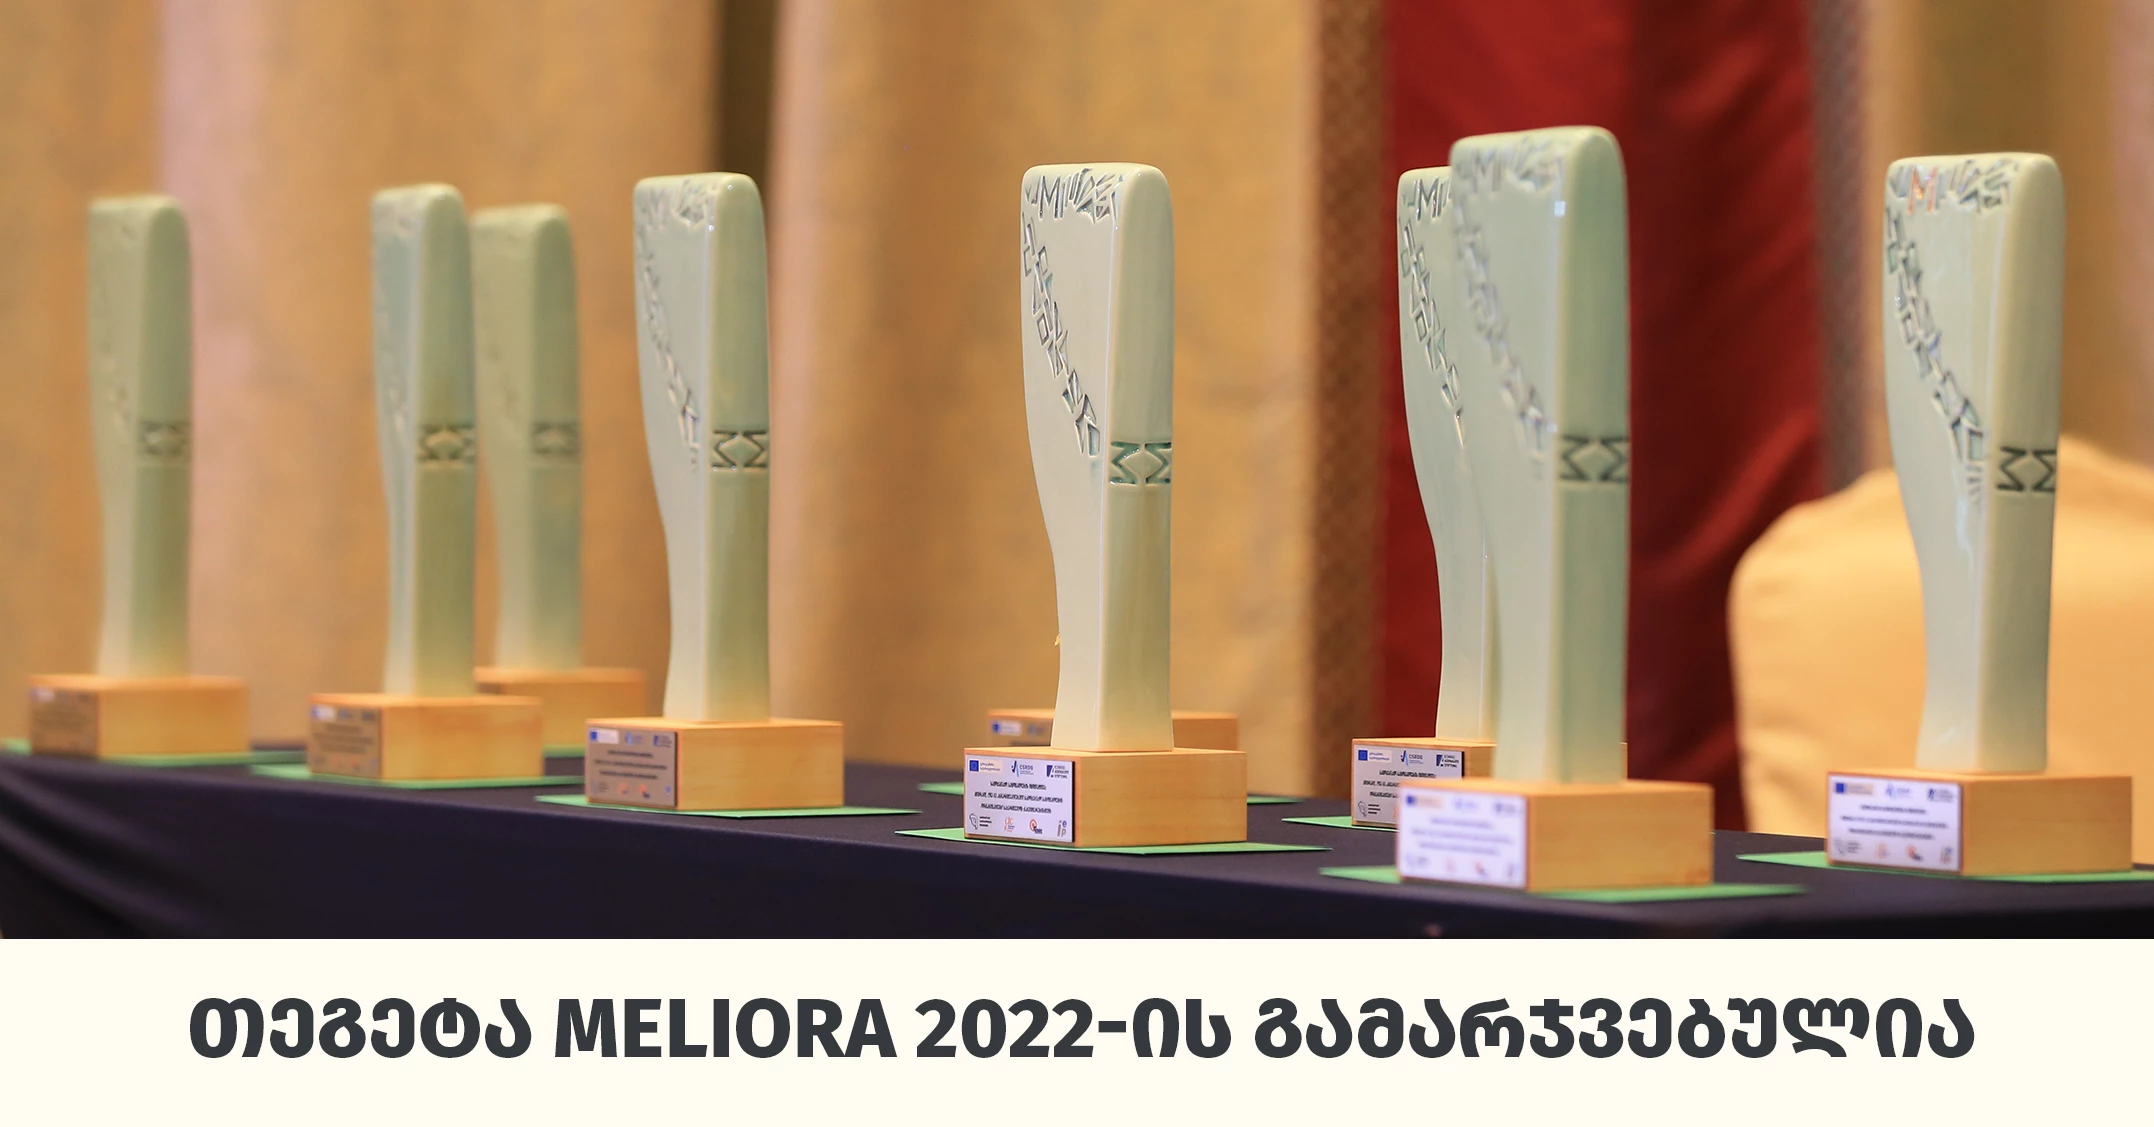 „თეგეტა გარემოსთვის“ - „თეგეტა ჰოლდინგი“ საქართველოს პასუხისმგებელი ბიზნესის კონკურსის Meliora 2022-ის გამარჯვებულია